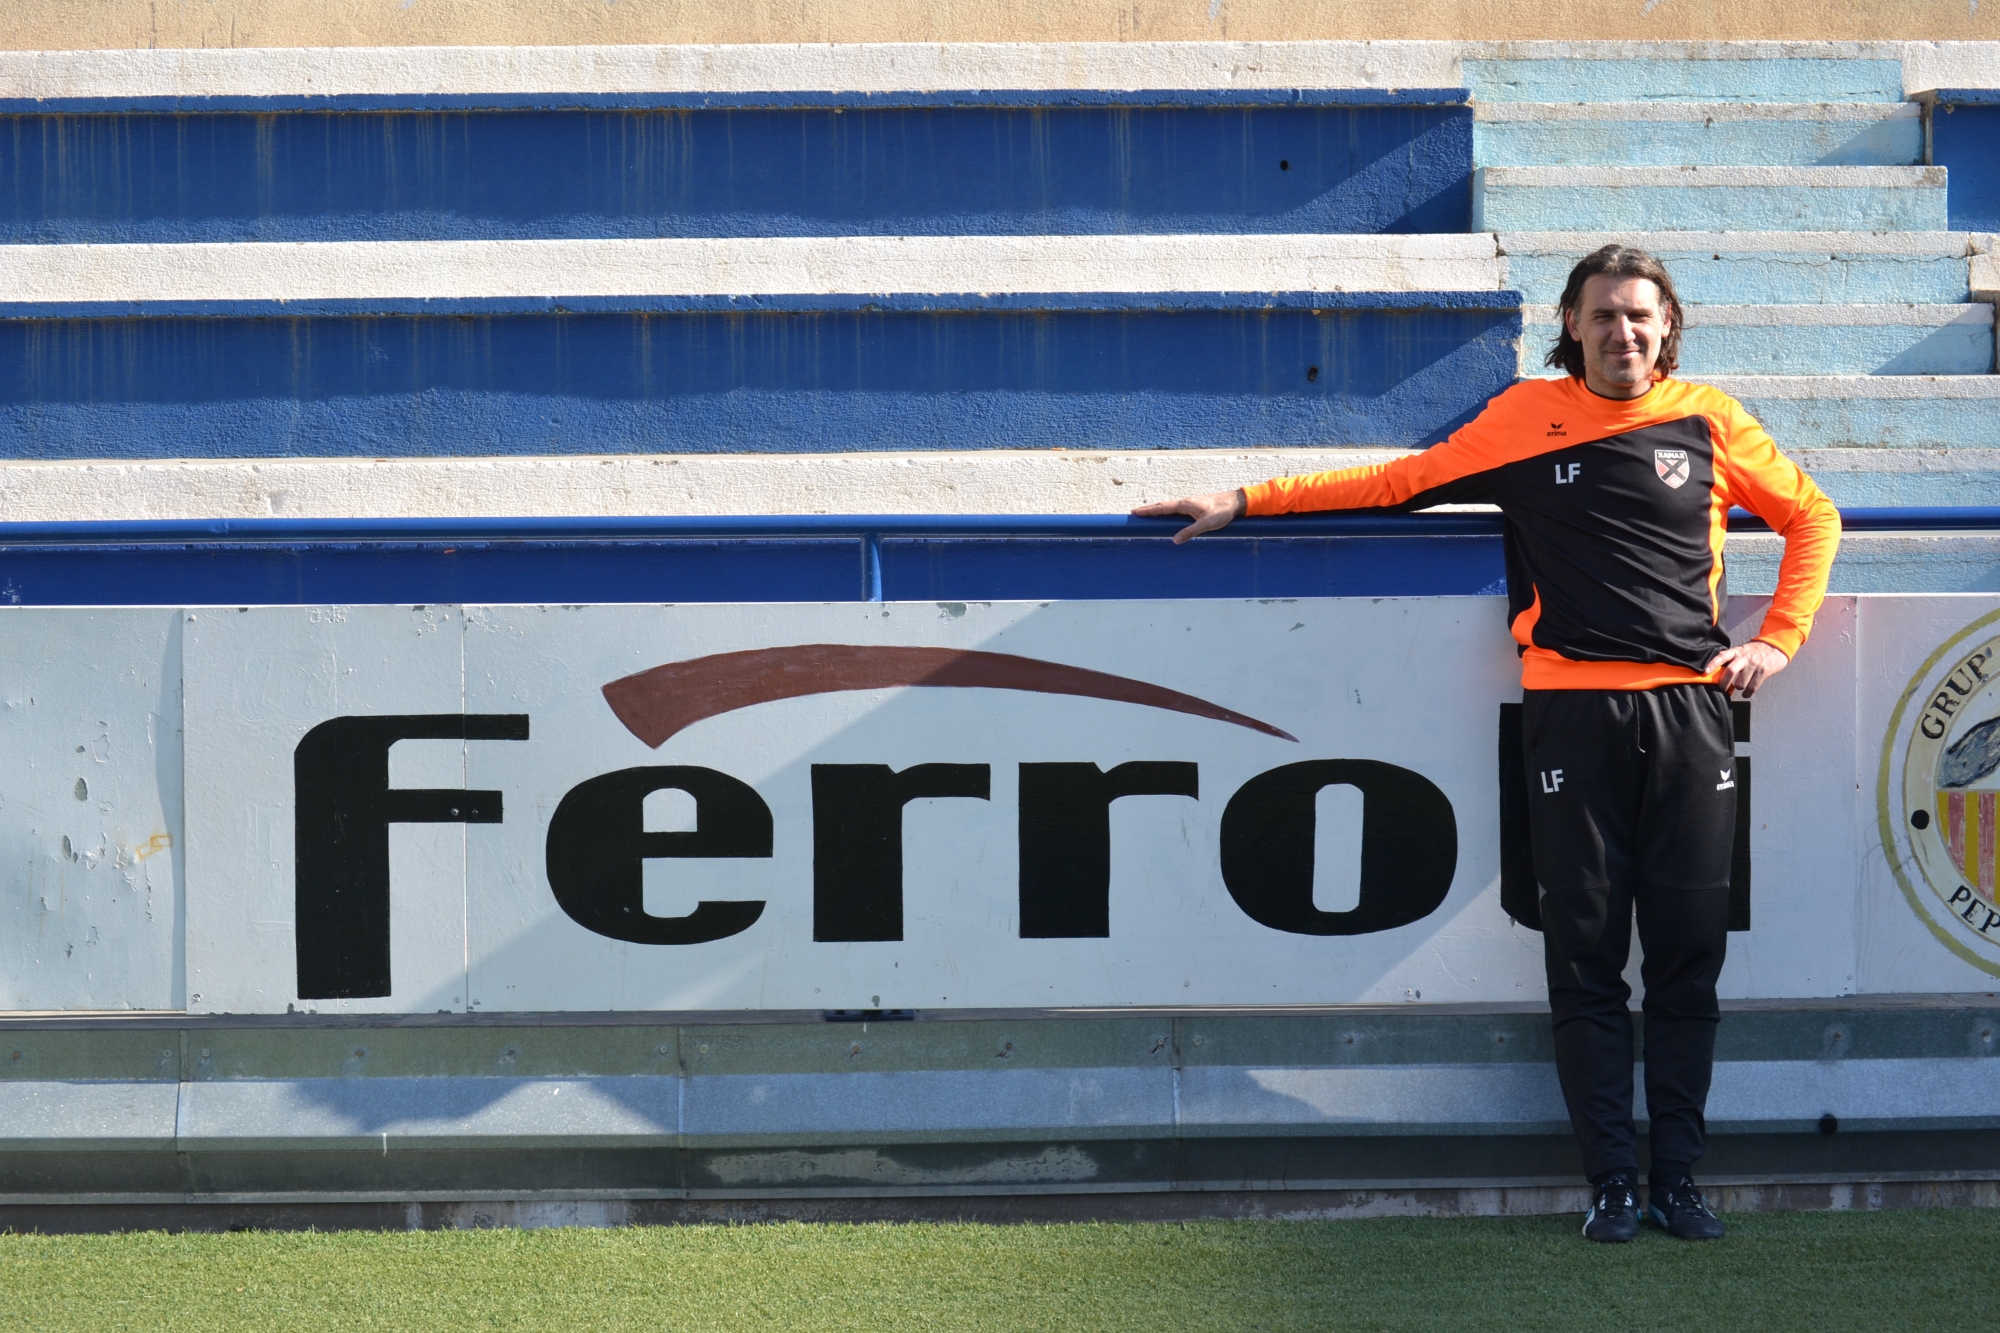 Luca Ferro, ex-gardien emblématique de Neuchâtel Xamax FCS et désormais entraîneur des gardiens des rouge et noir, sera sur la feuille de match face à Servette.